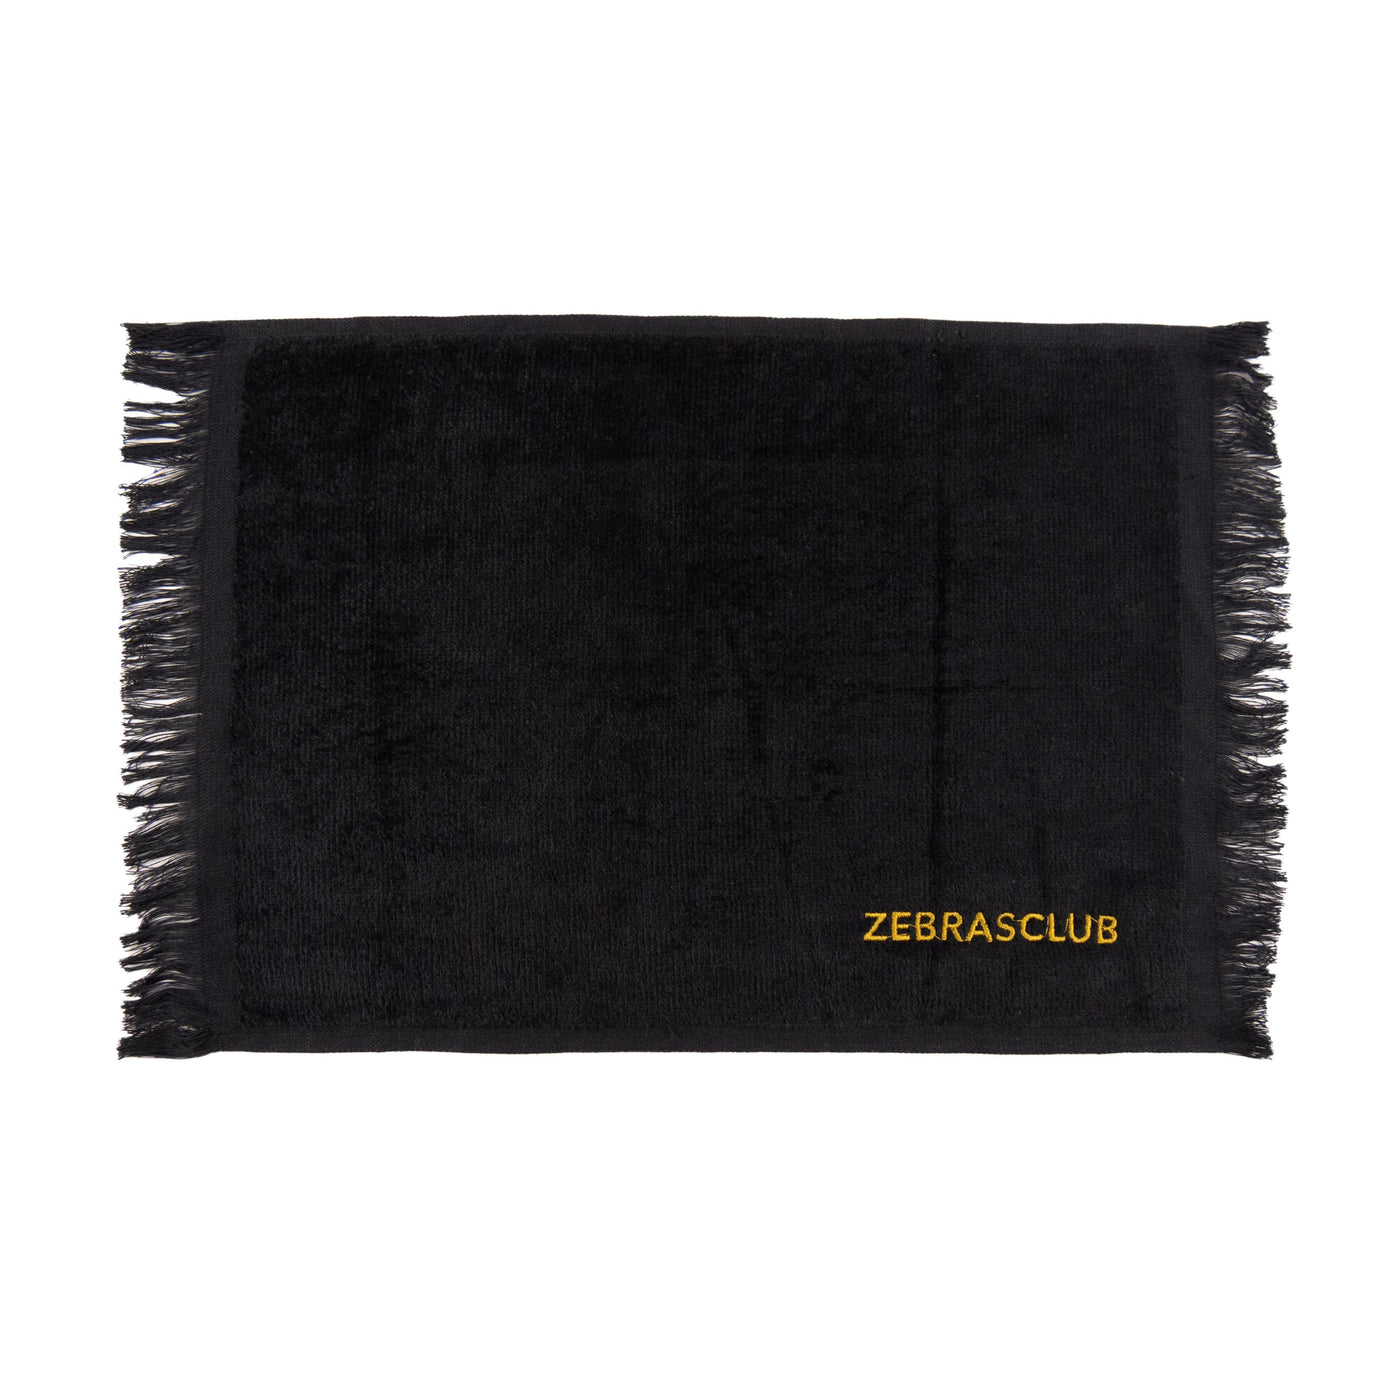 Zebrasclub skate towel